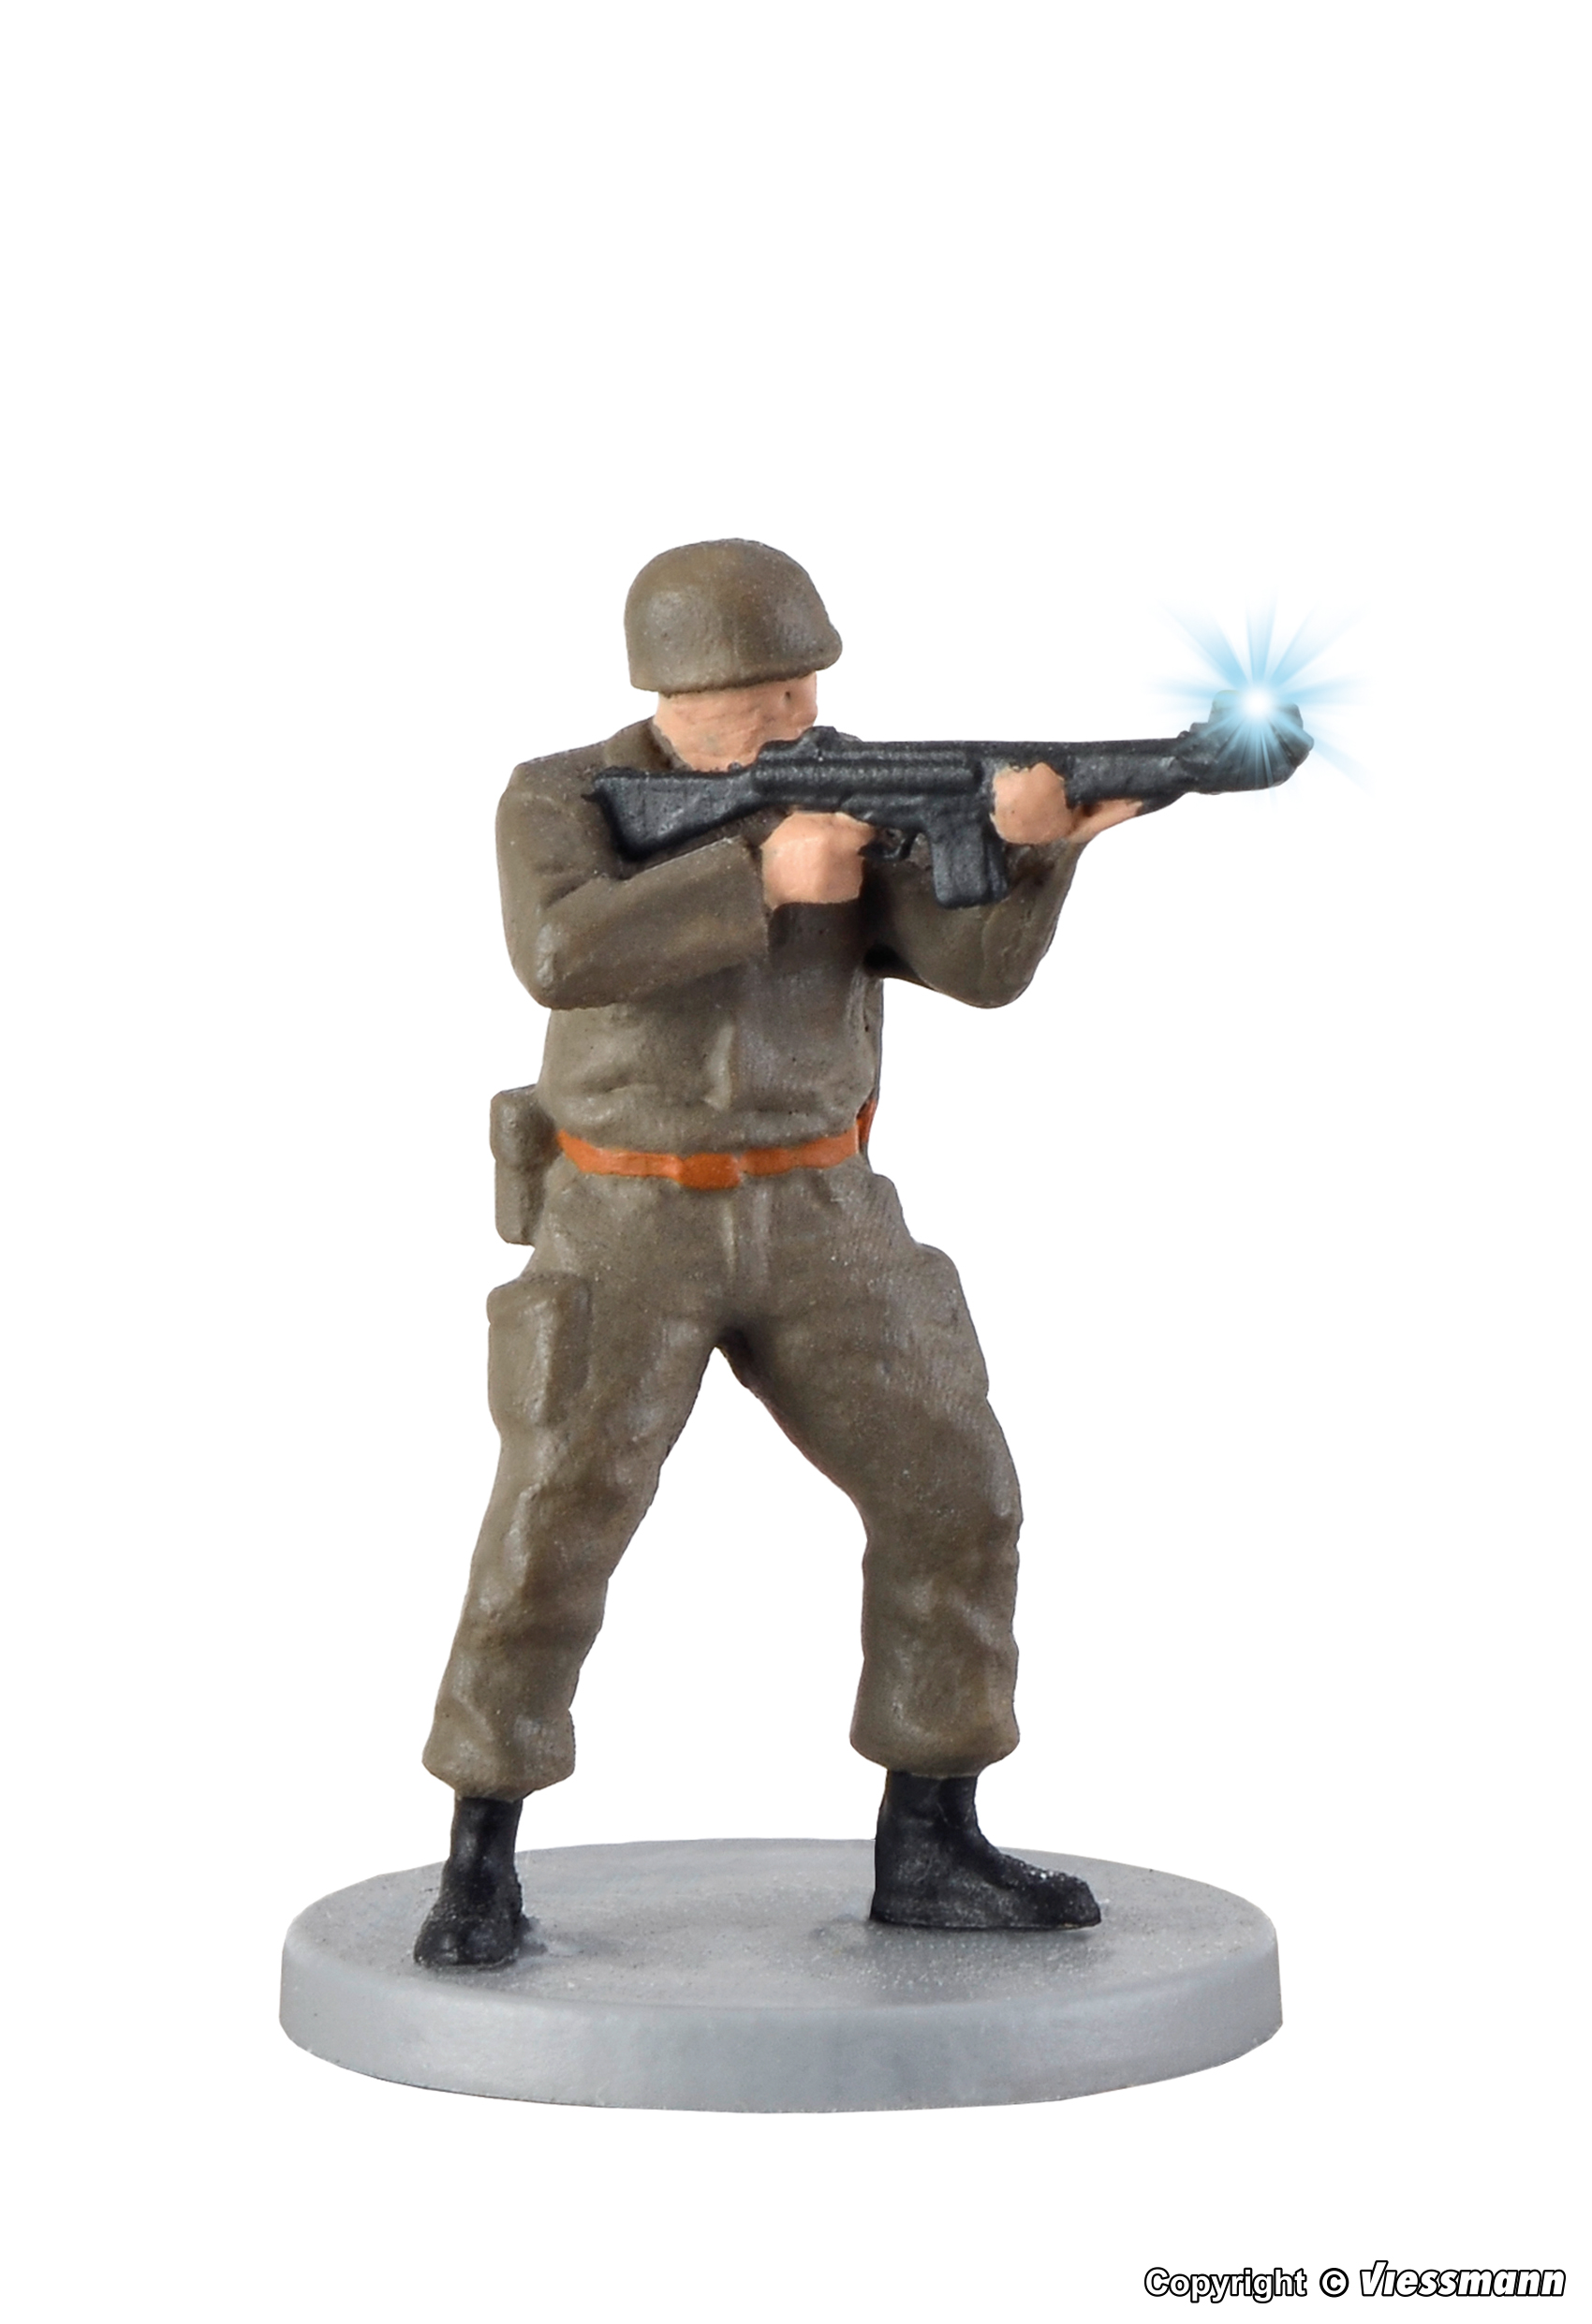 Viessmann 1530 eMotion Standing Soldier with Gun and Muzzle Flash